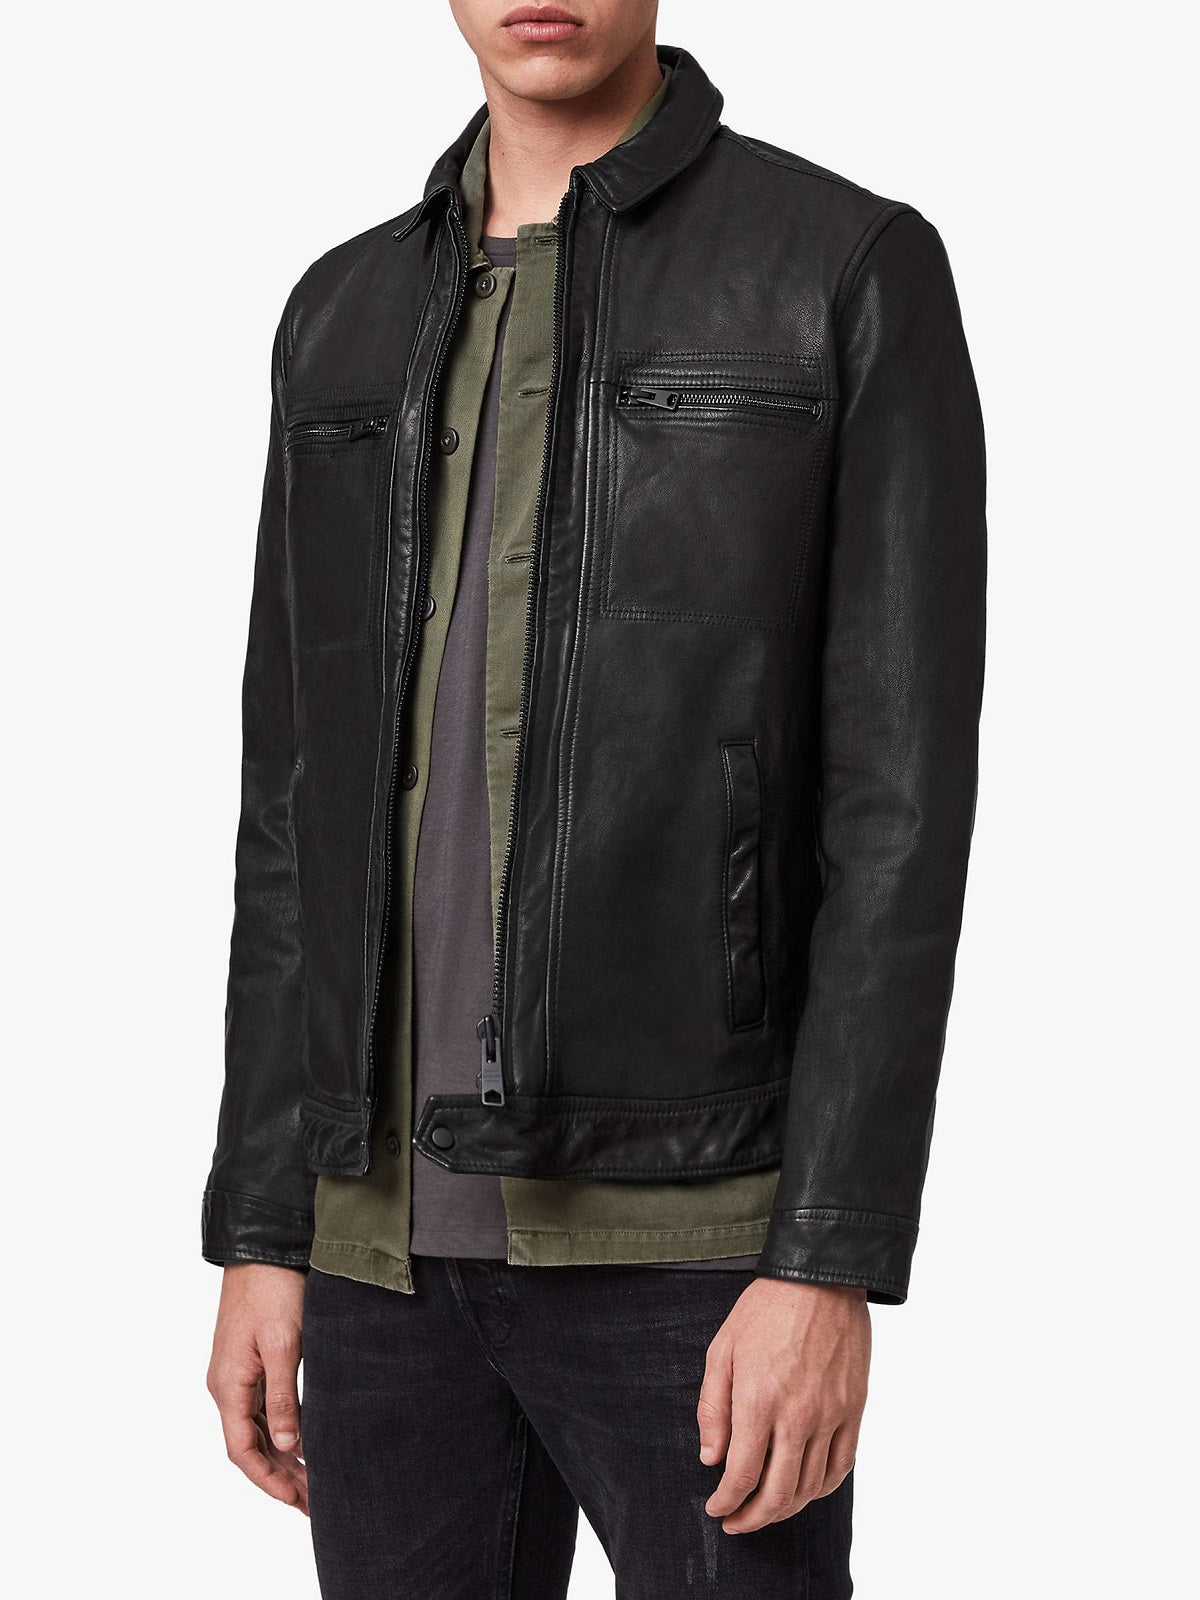 Men Solid Black Leather Jacket